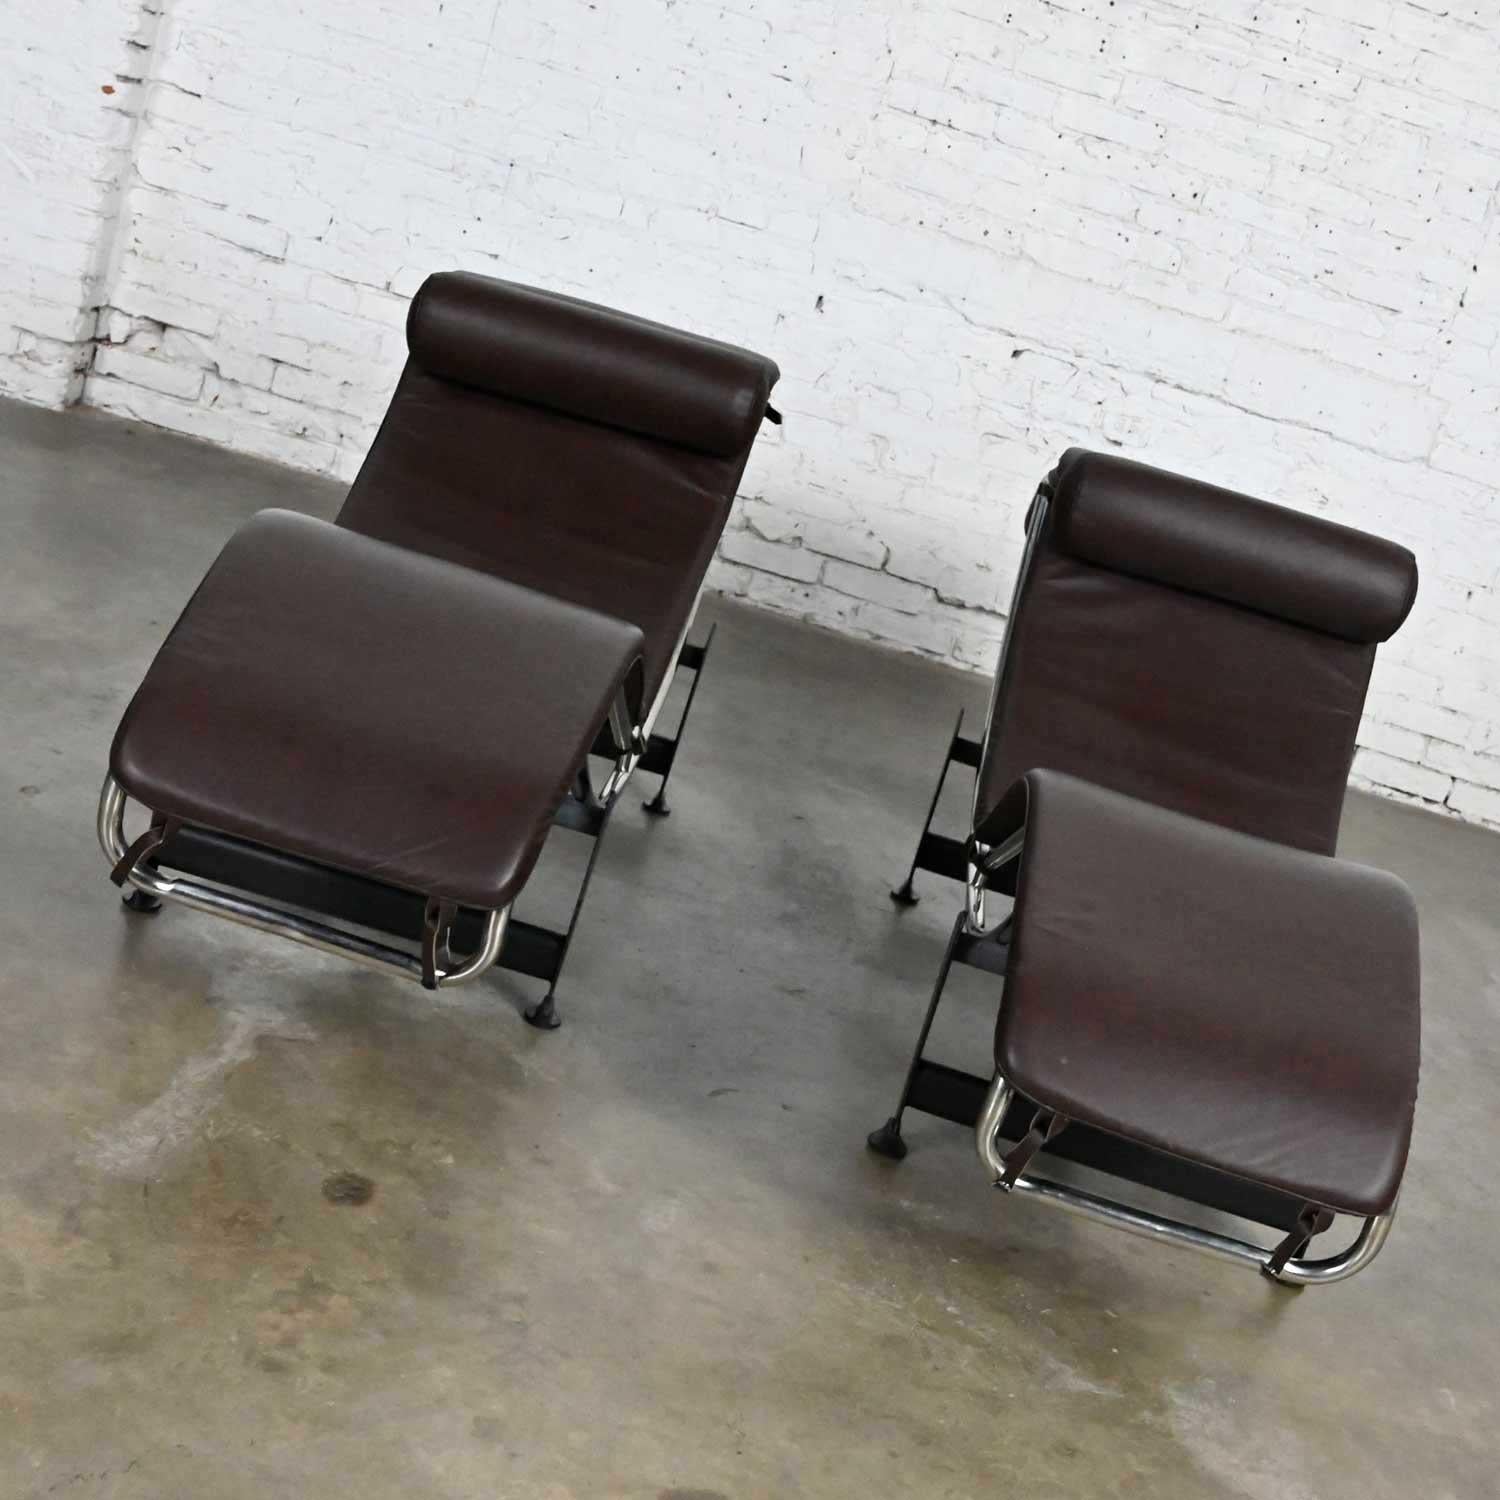 Fabuleuse paire de chaises longues avec des cadres chromés, des bases en acier peint en noir et des coussins en cuir brun dans le style de Le Corbusier LC4. Pas une chaise 